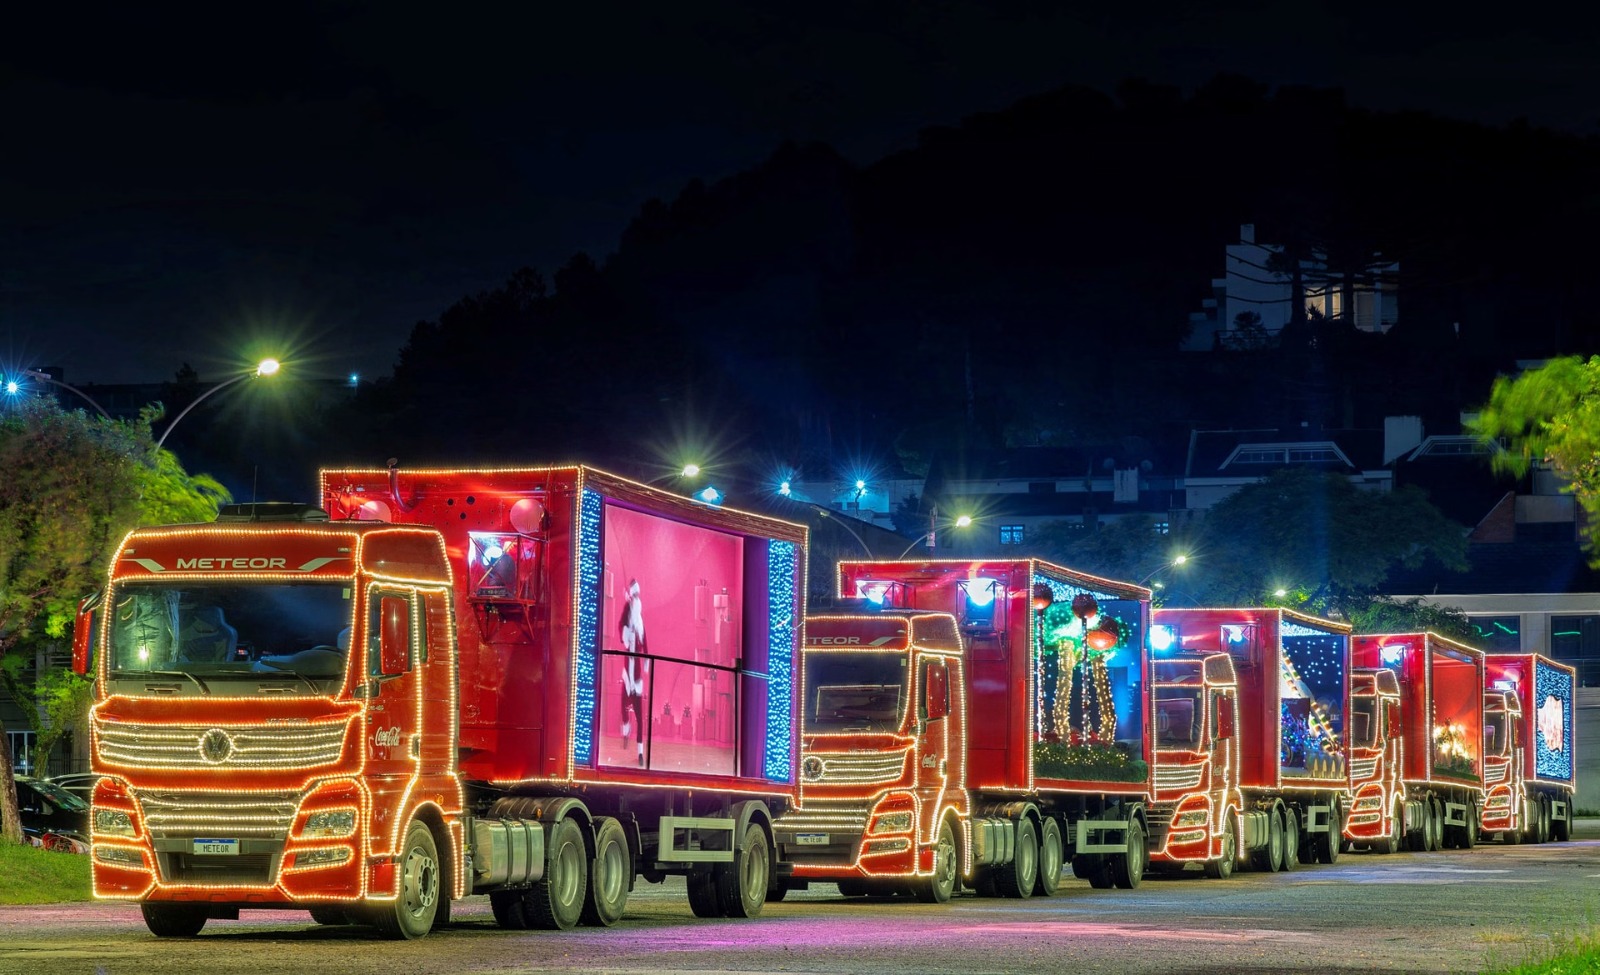 Plaza Niterói promete encantar público com espetáculo Natal dos Brinquedos  e chegada da Caravana da Coca-Cola